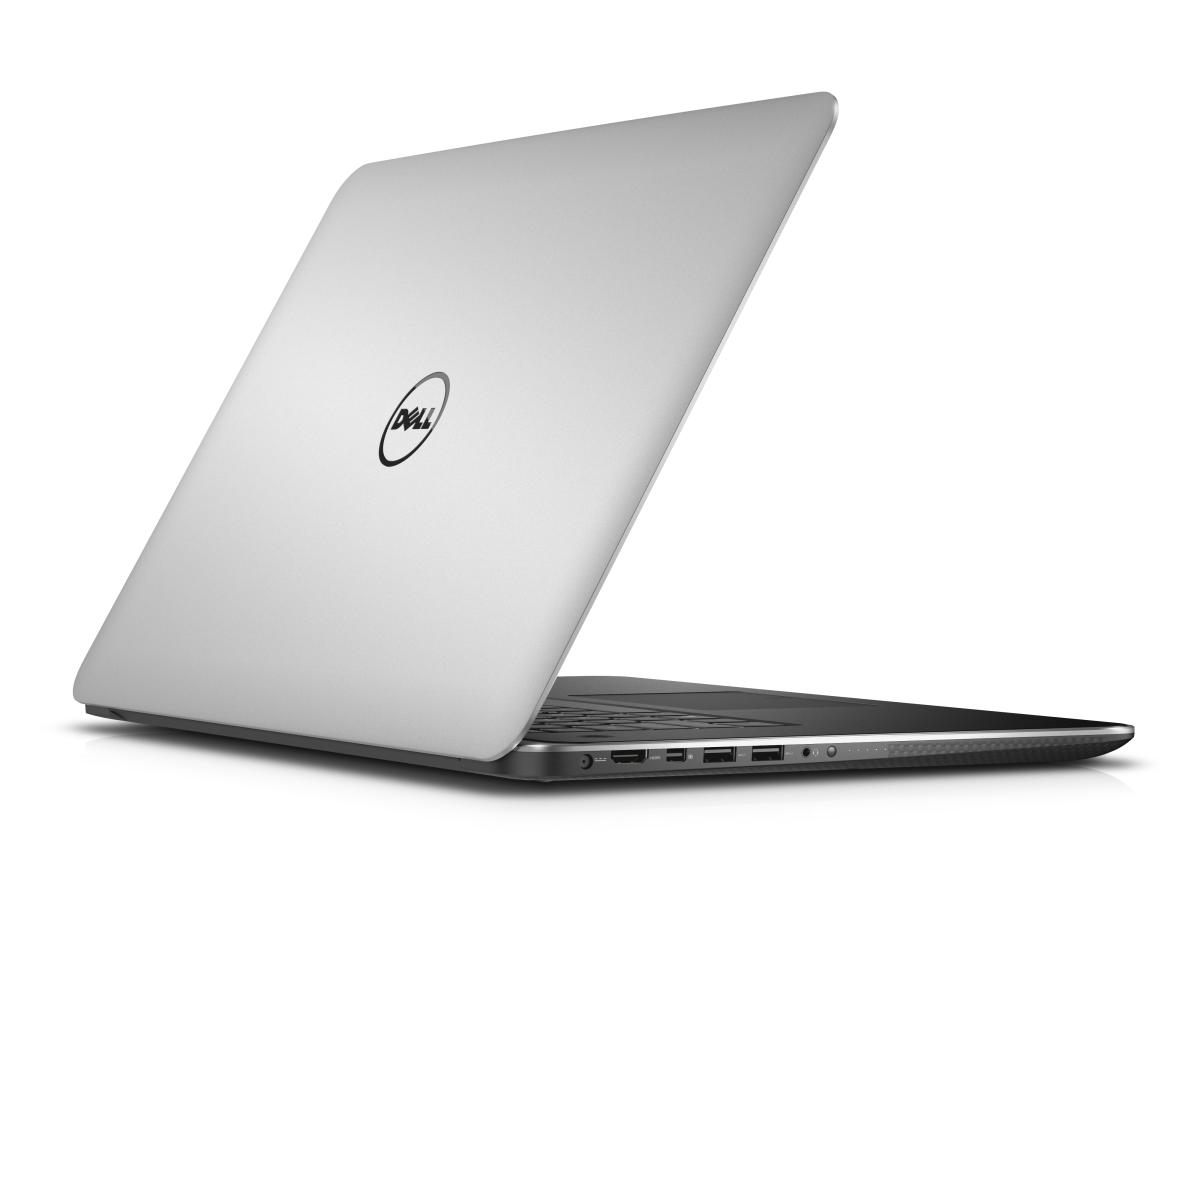 Dells Prosupport Plus neu auch für PCs, Notebooks und Tablets